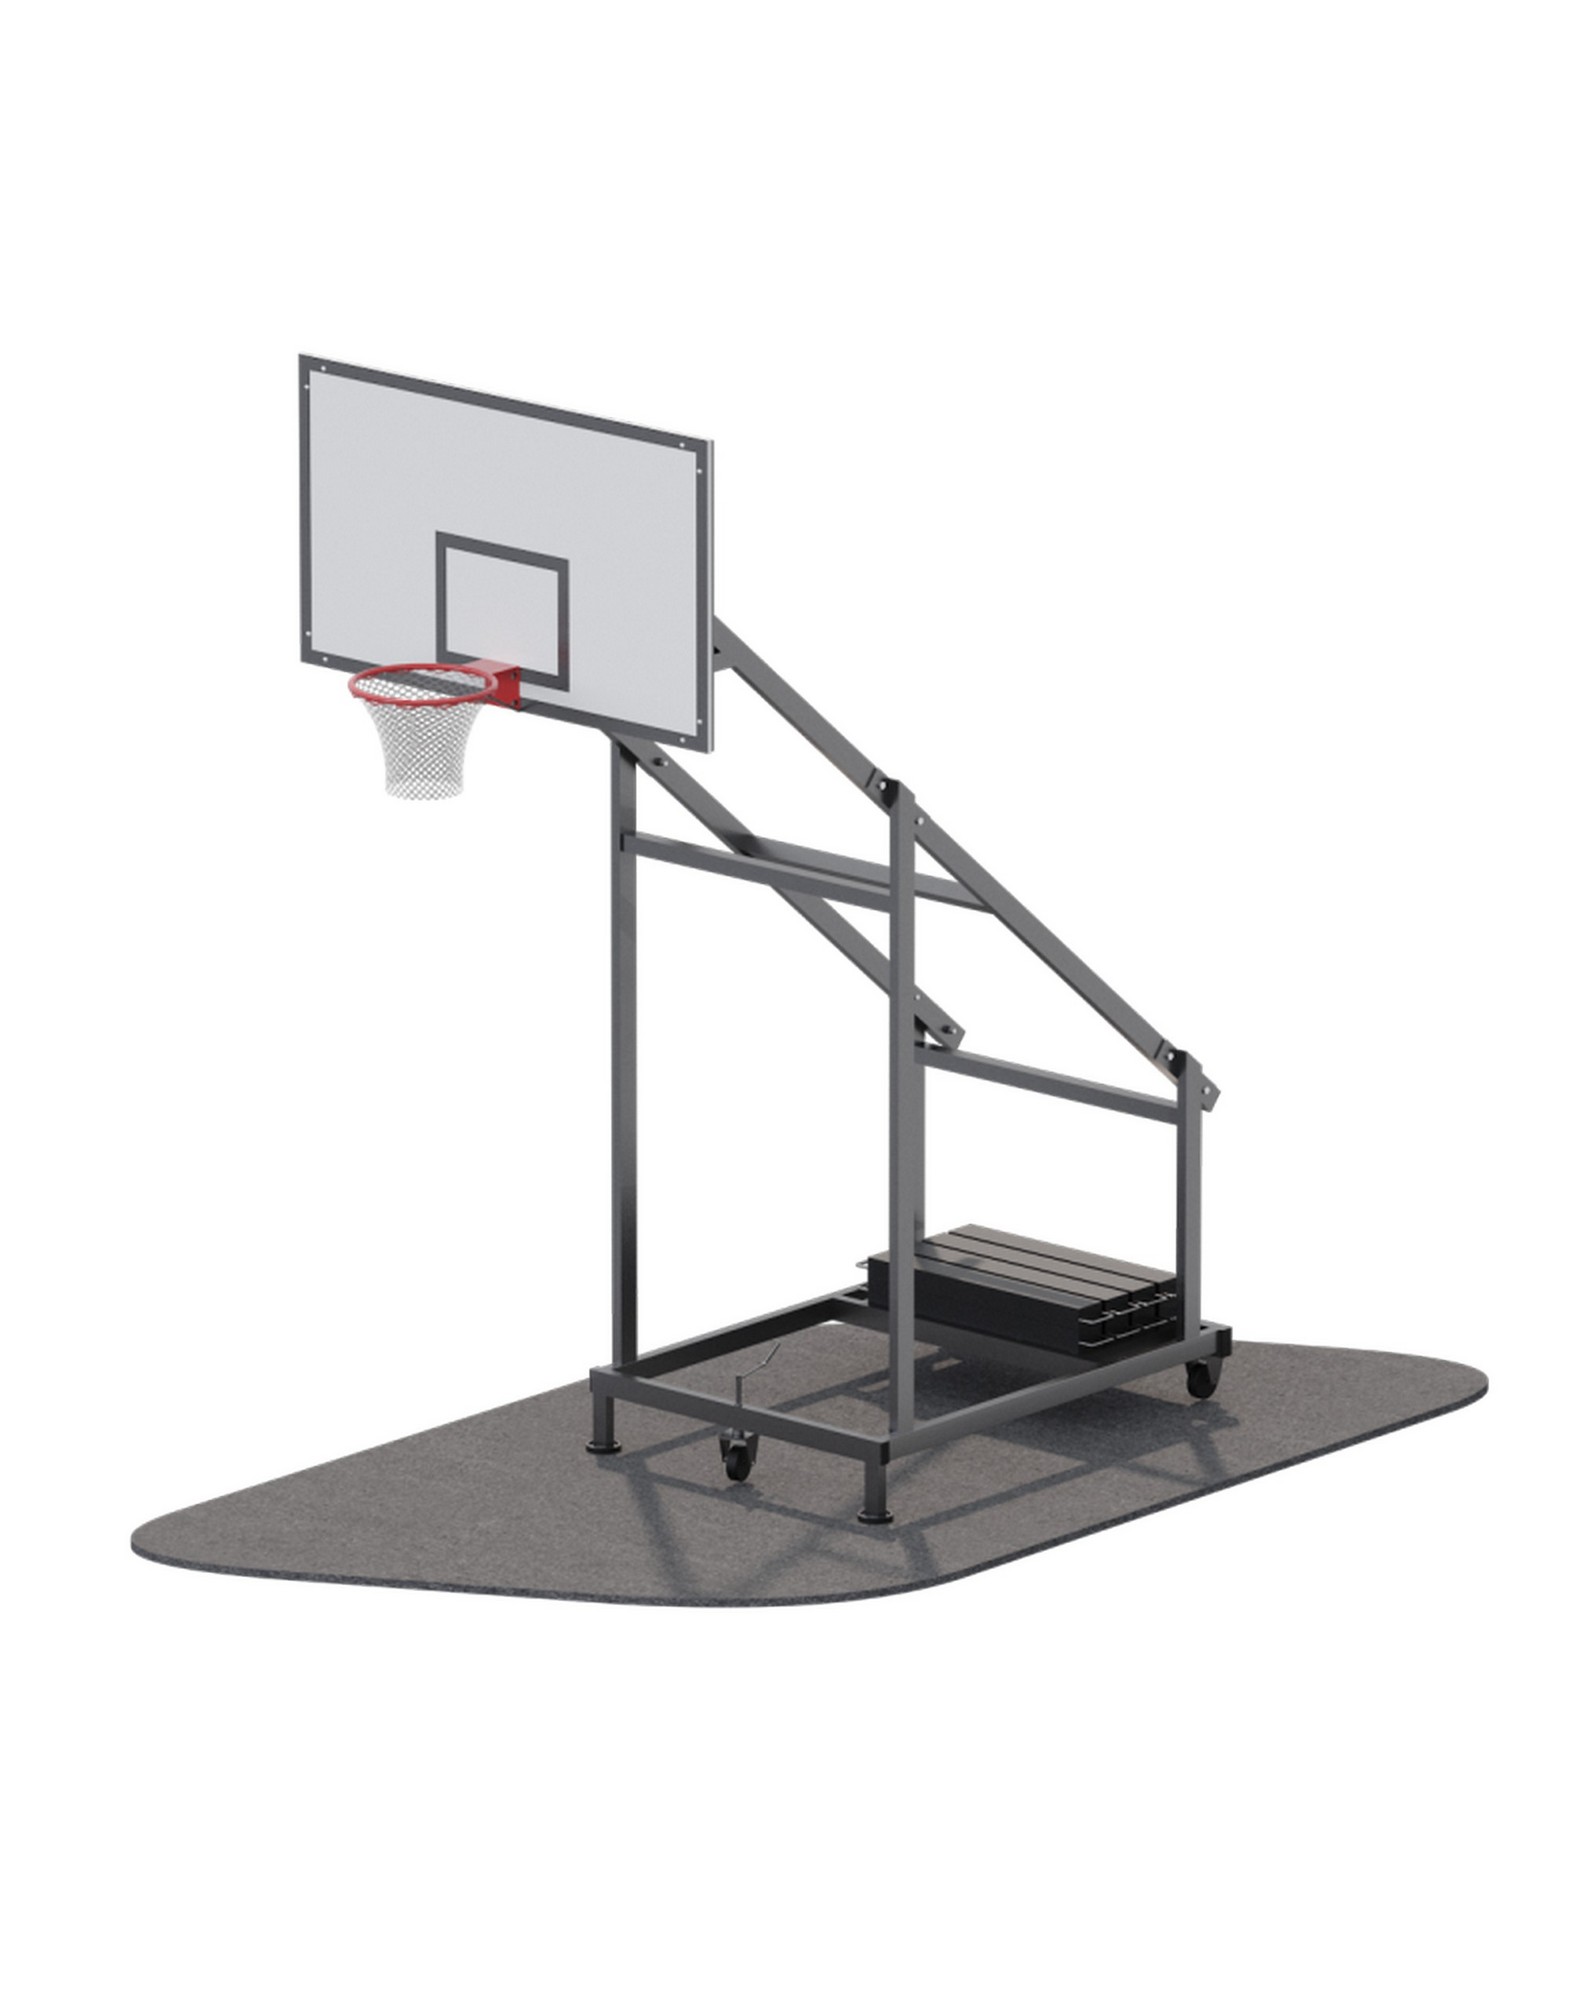 Мобильная баскетбольная стойка ARMS ARMS710 1570_2000